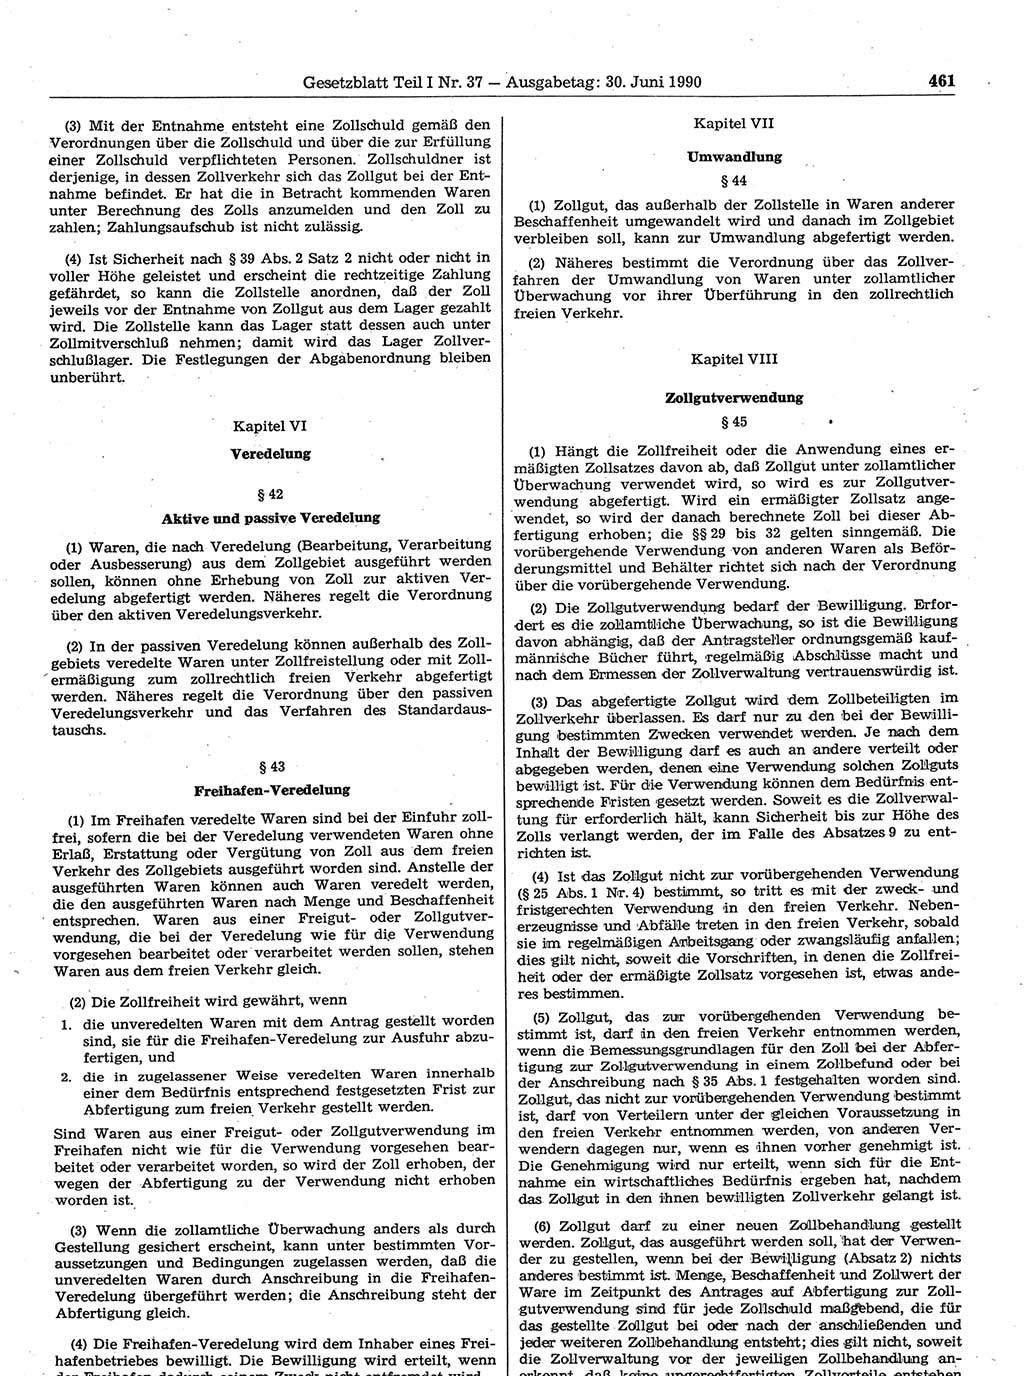 Gesetzblatt (GBl.) der Deutschen Demokratischen Republik (DDR) Teil Ⅰ 1990, Seite 461 (GBl. DDR Ⅰ 1990, S. 461)